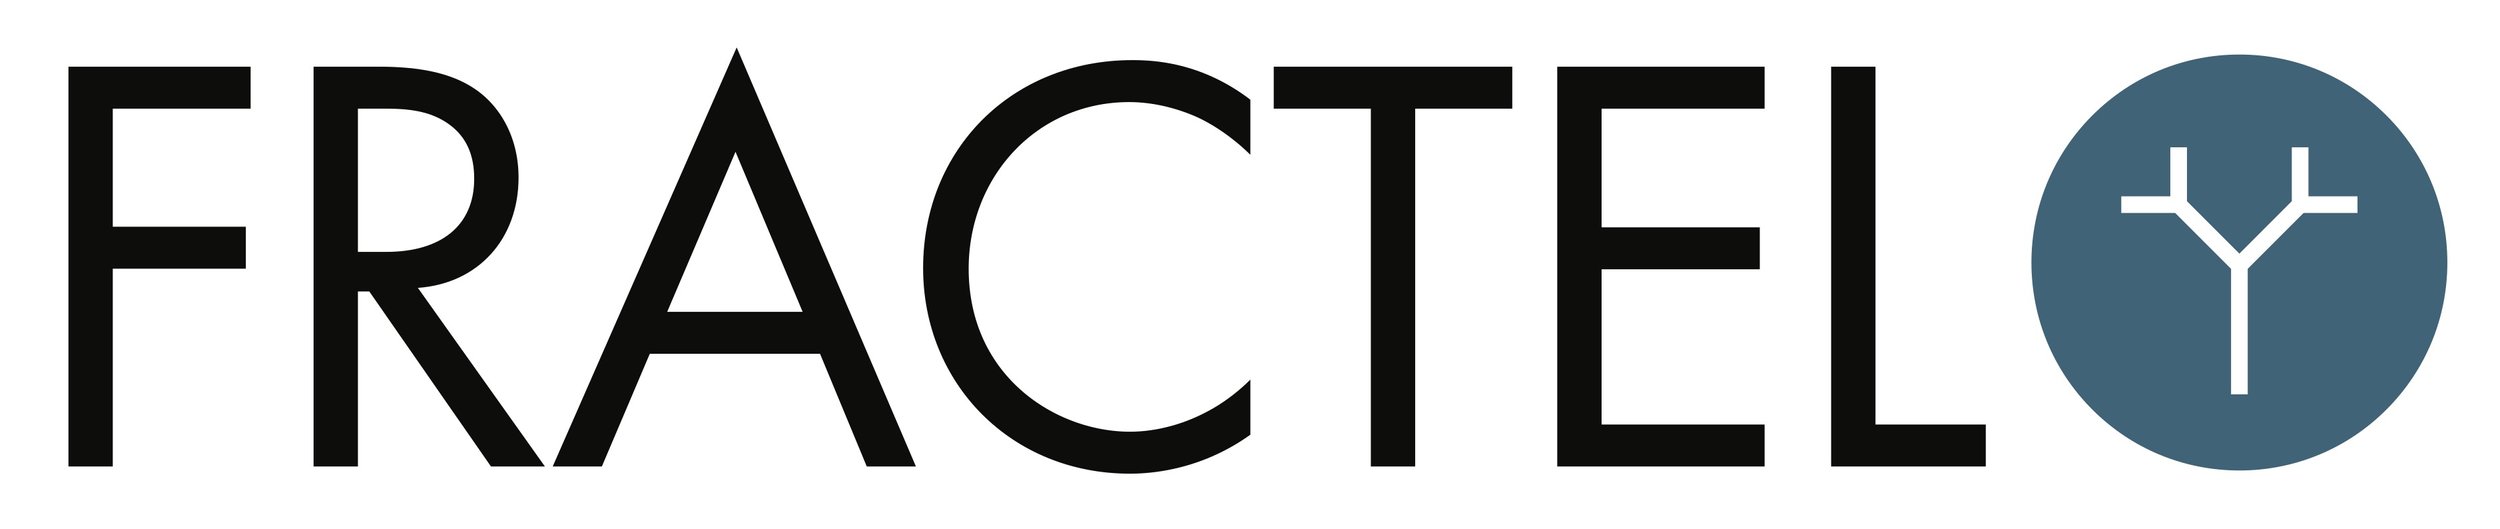 FRACTEL__2019 Logo.jpg